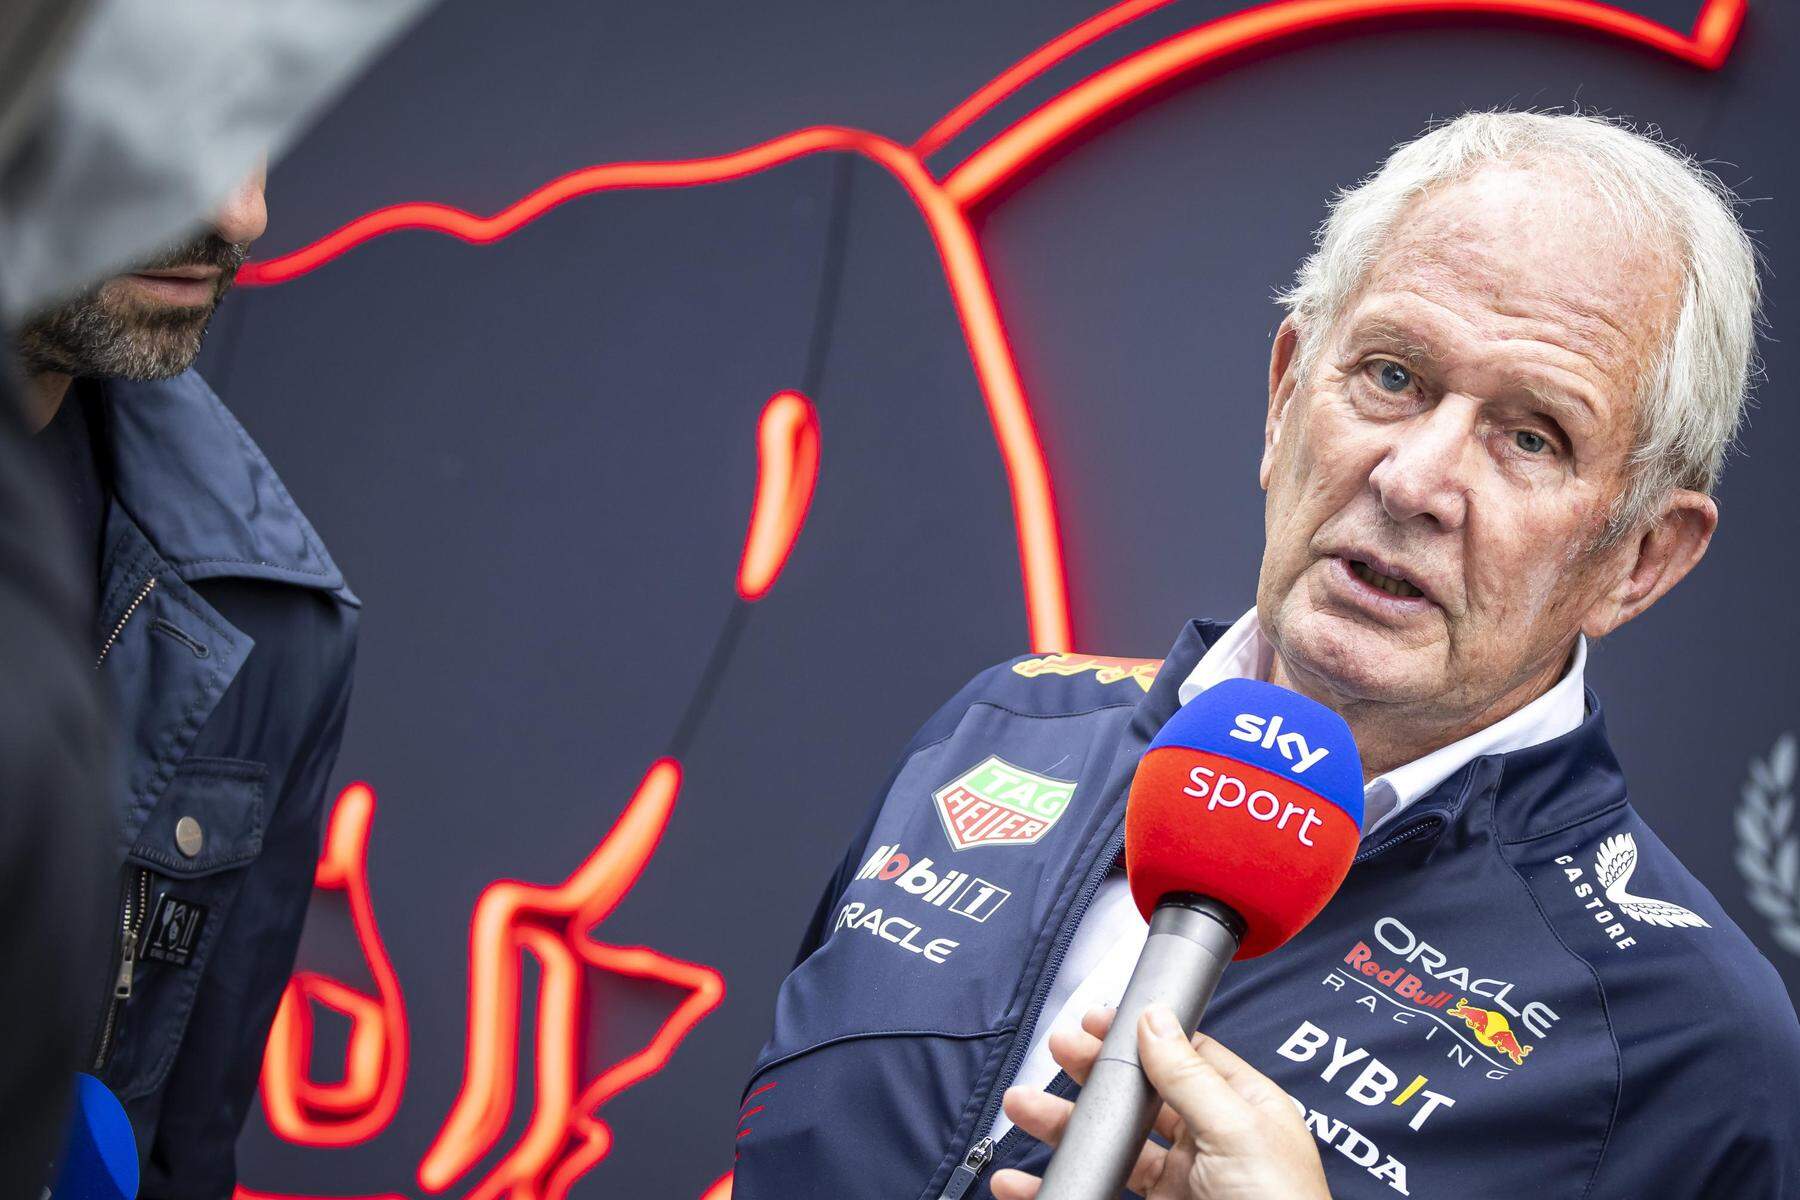 Formel 1: Suspendierung von Helmut Marko bei Red Bull Racing möglich